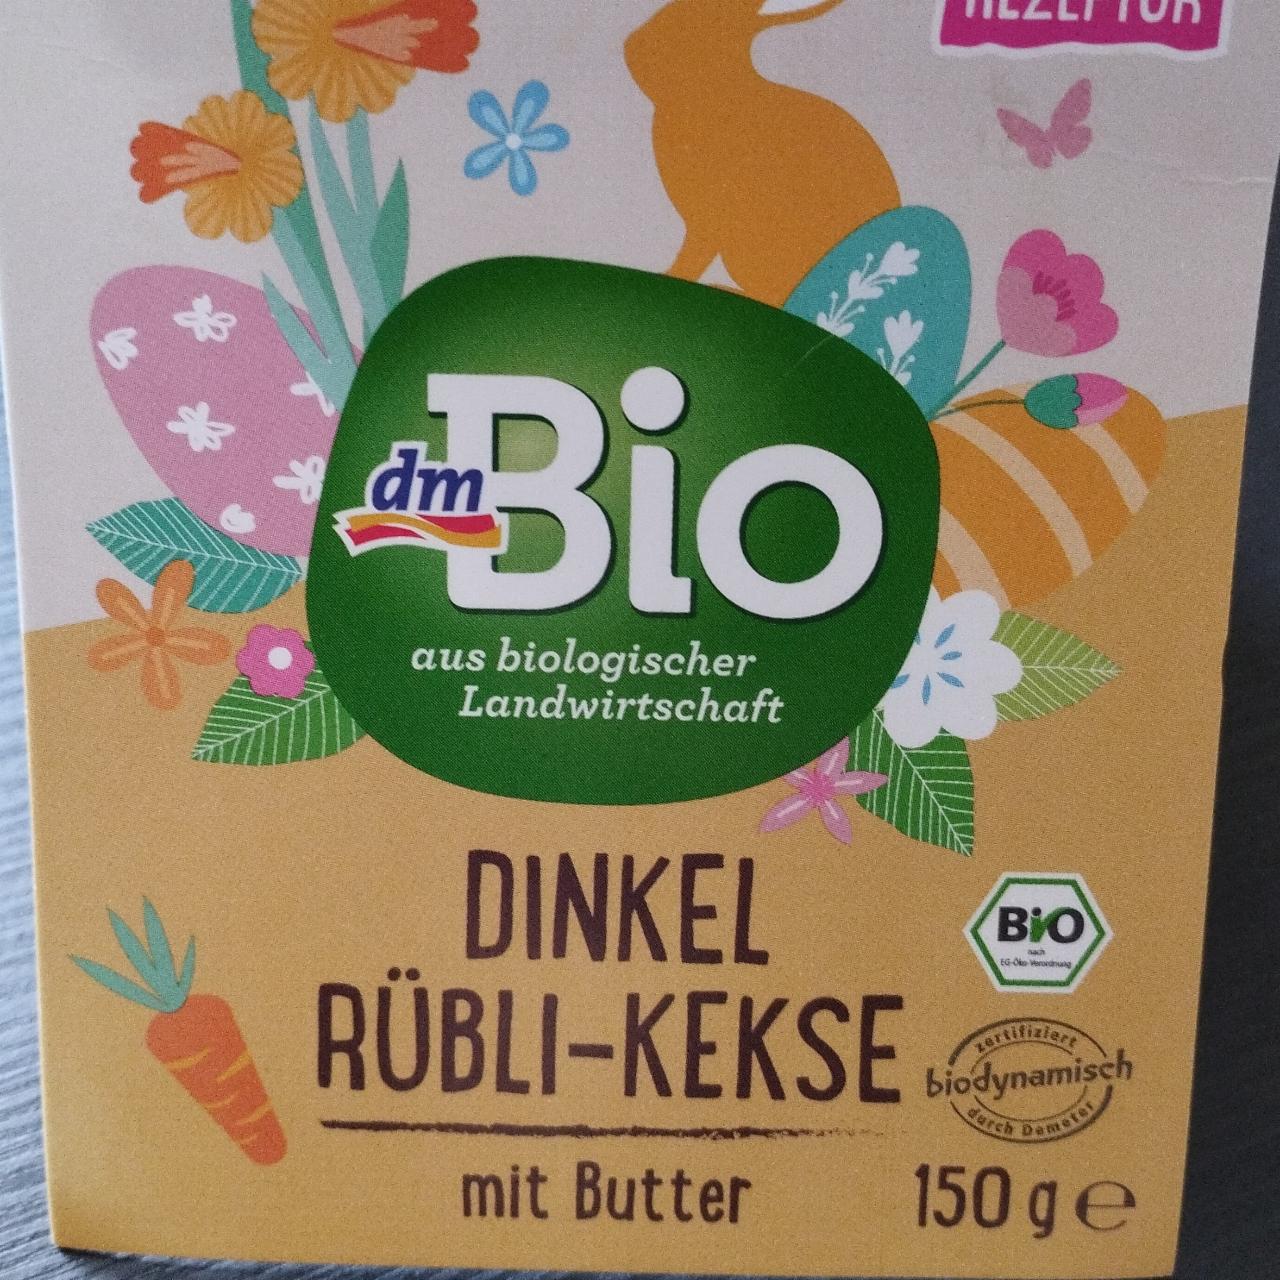 Fotografie - Dinkel Rübli-Kekse mít Butter dmBio